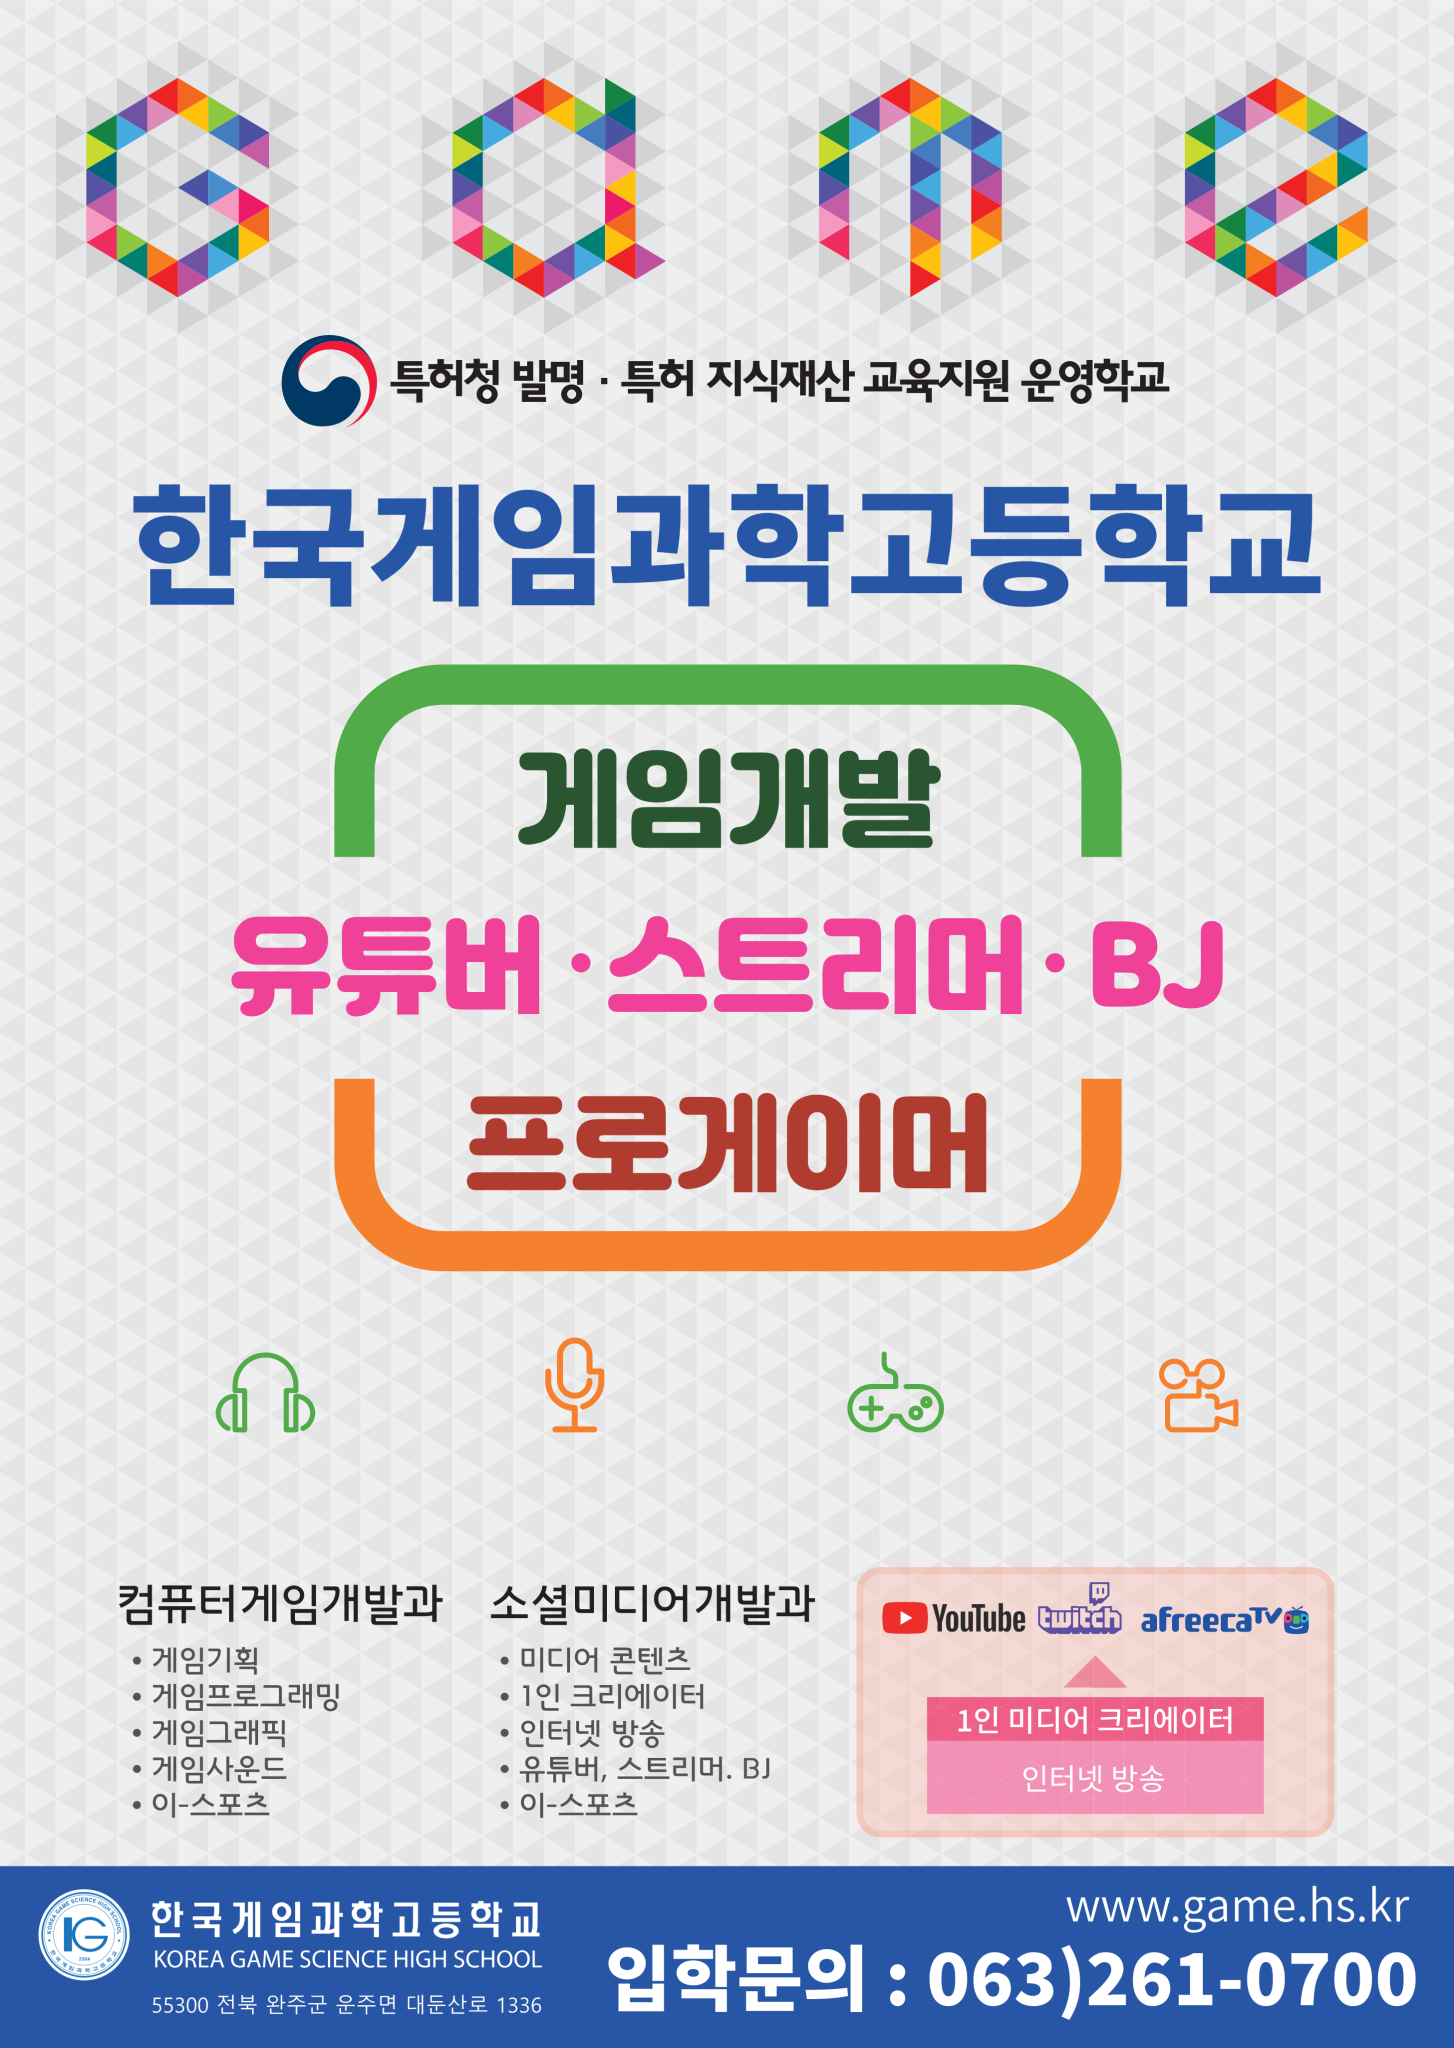 한국게임과학고등학교_한국게임과학고등학교 포스터_1